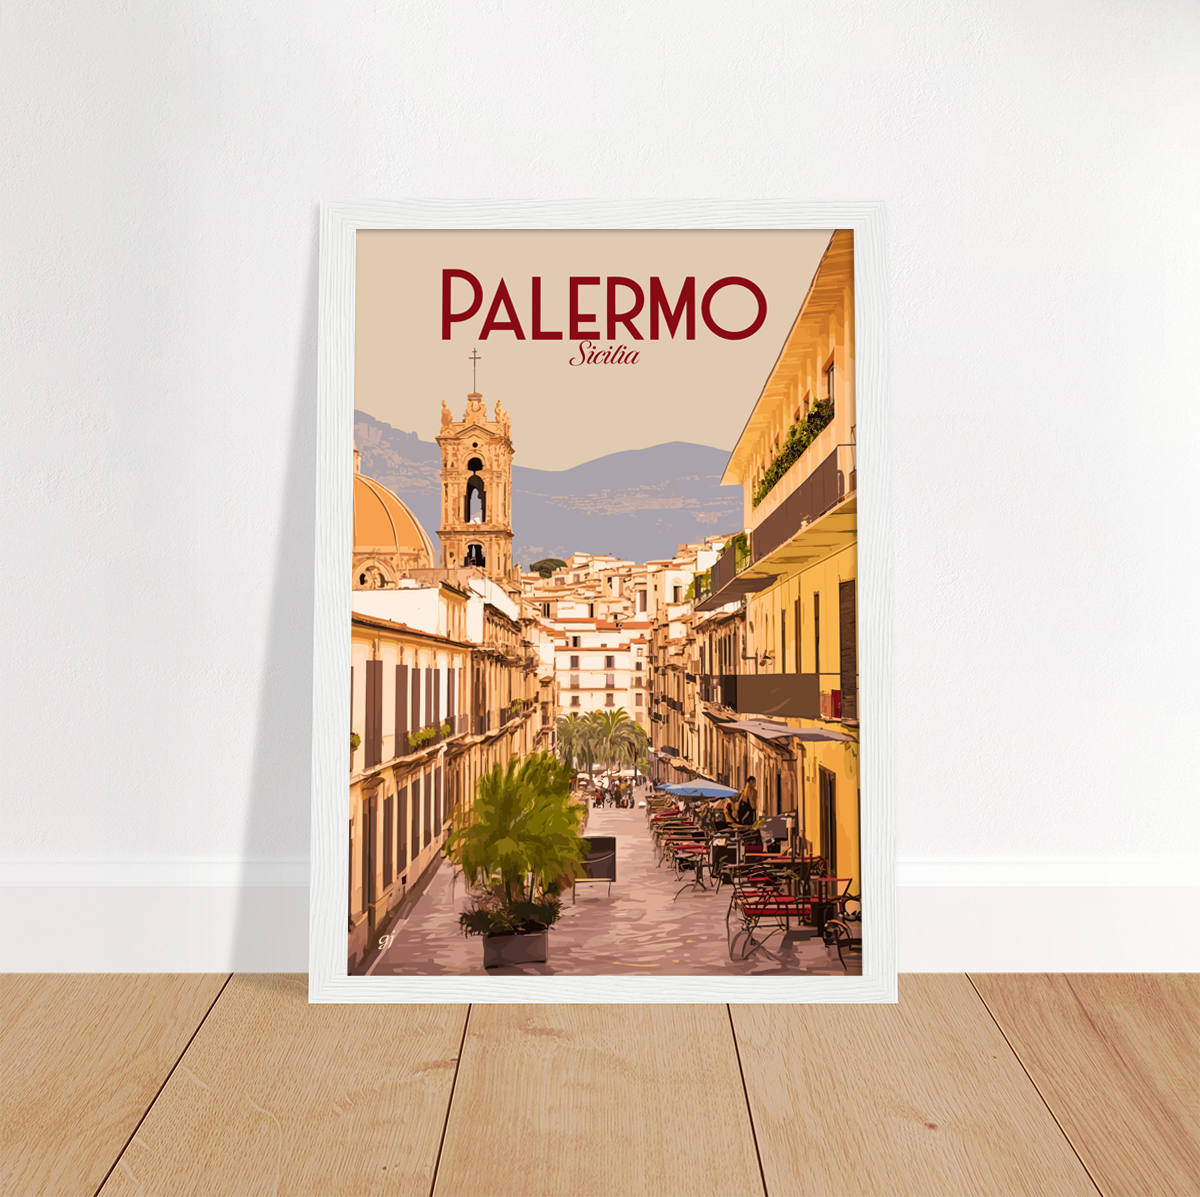 Palermo poster by bon voyage design